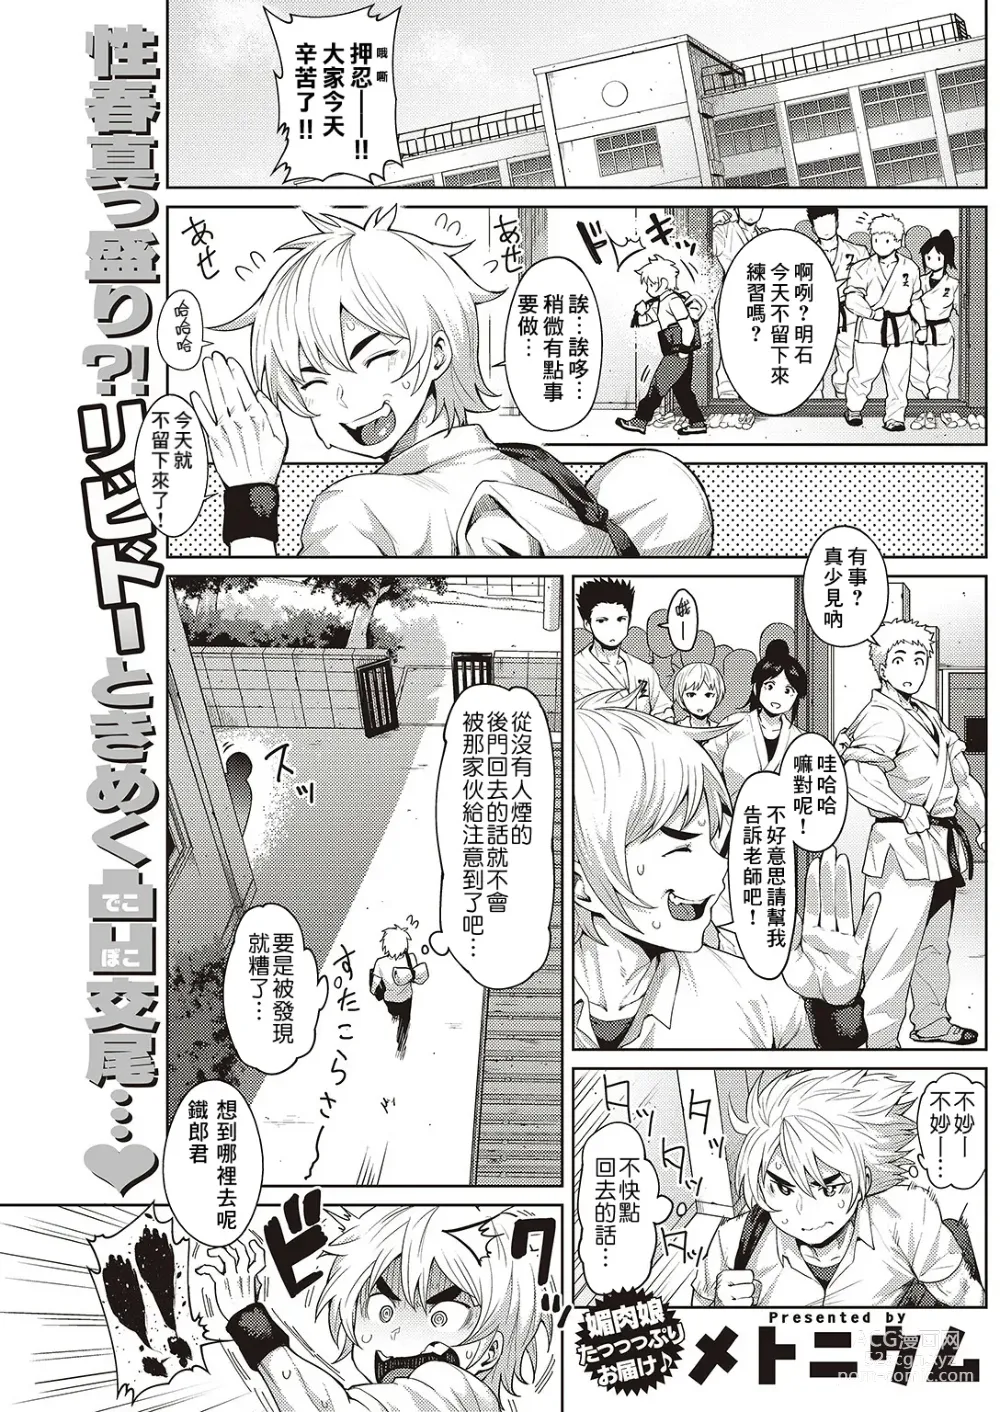 Page 1 of manga Chiisana Kimi dakara…